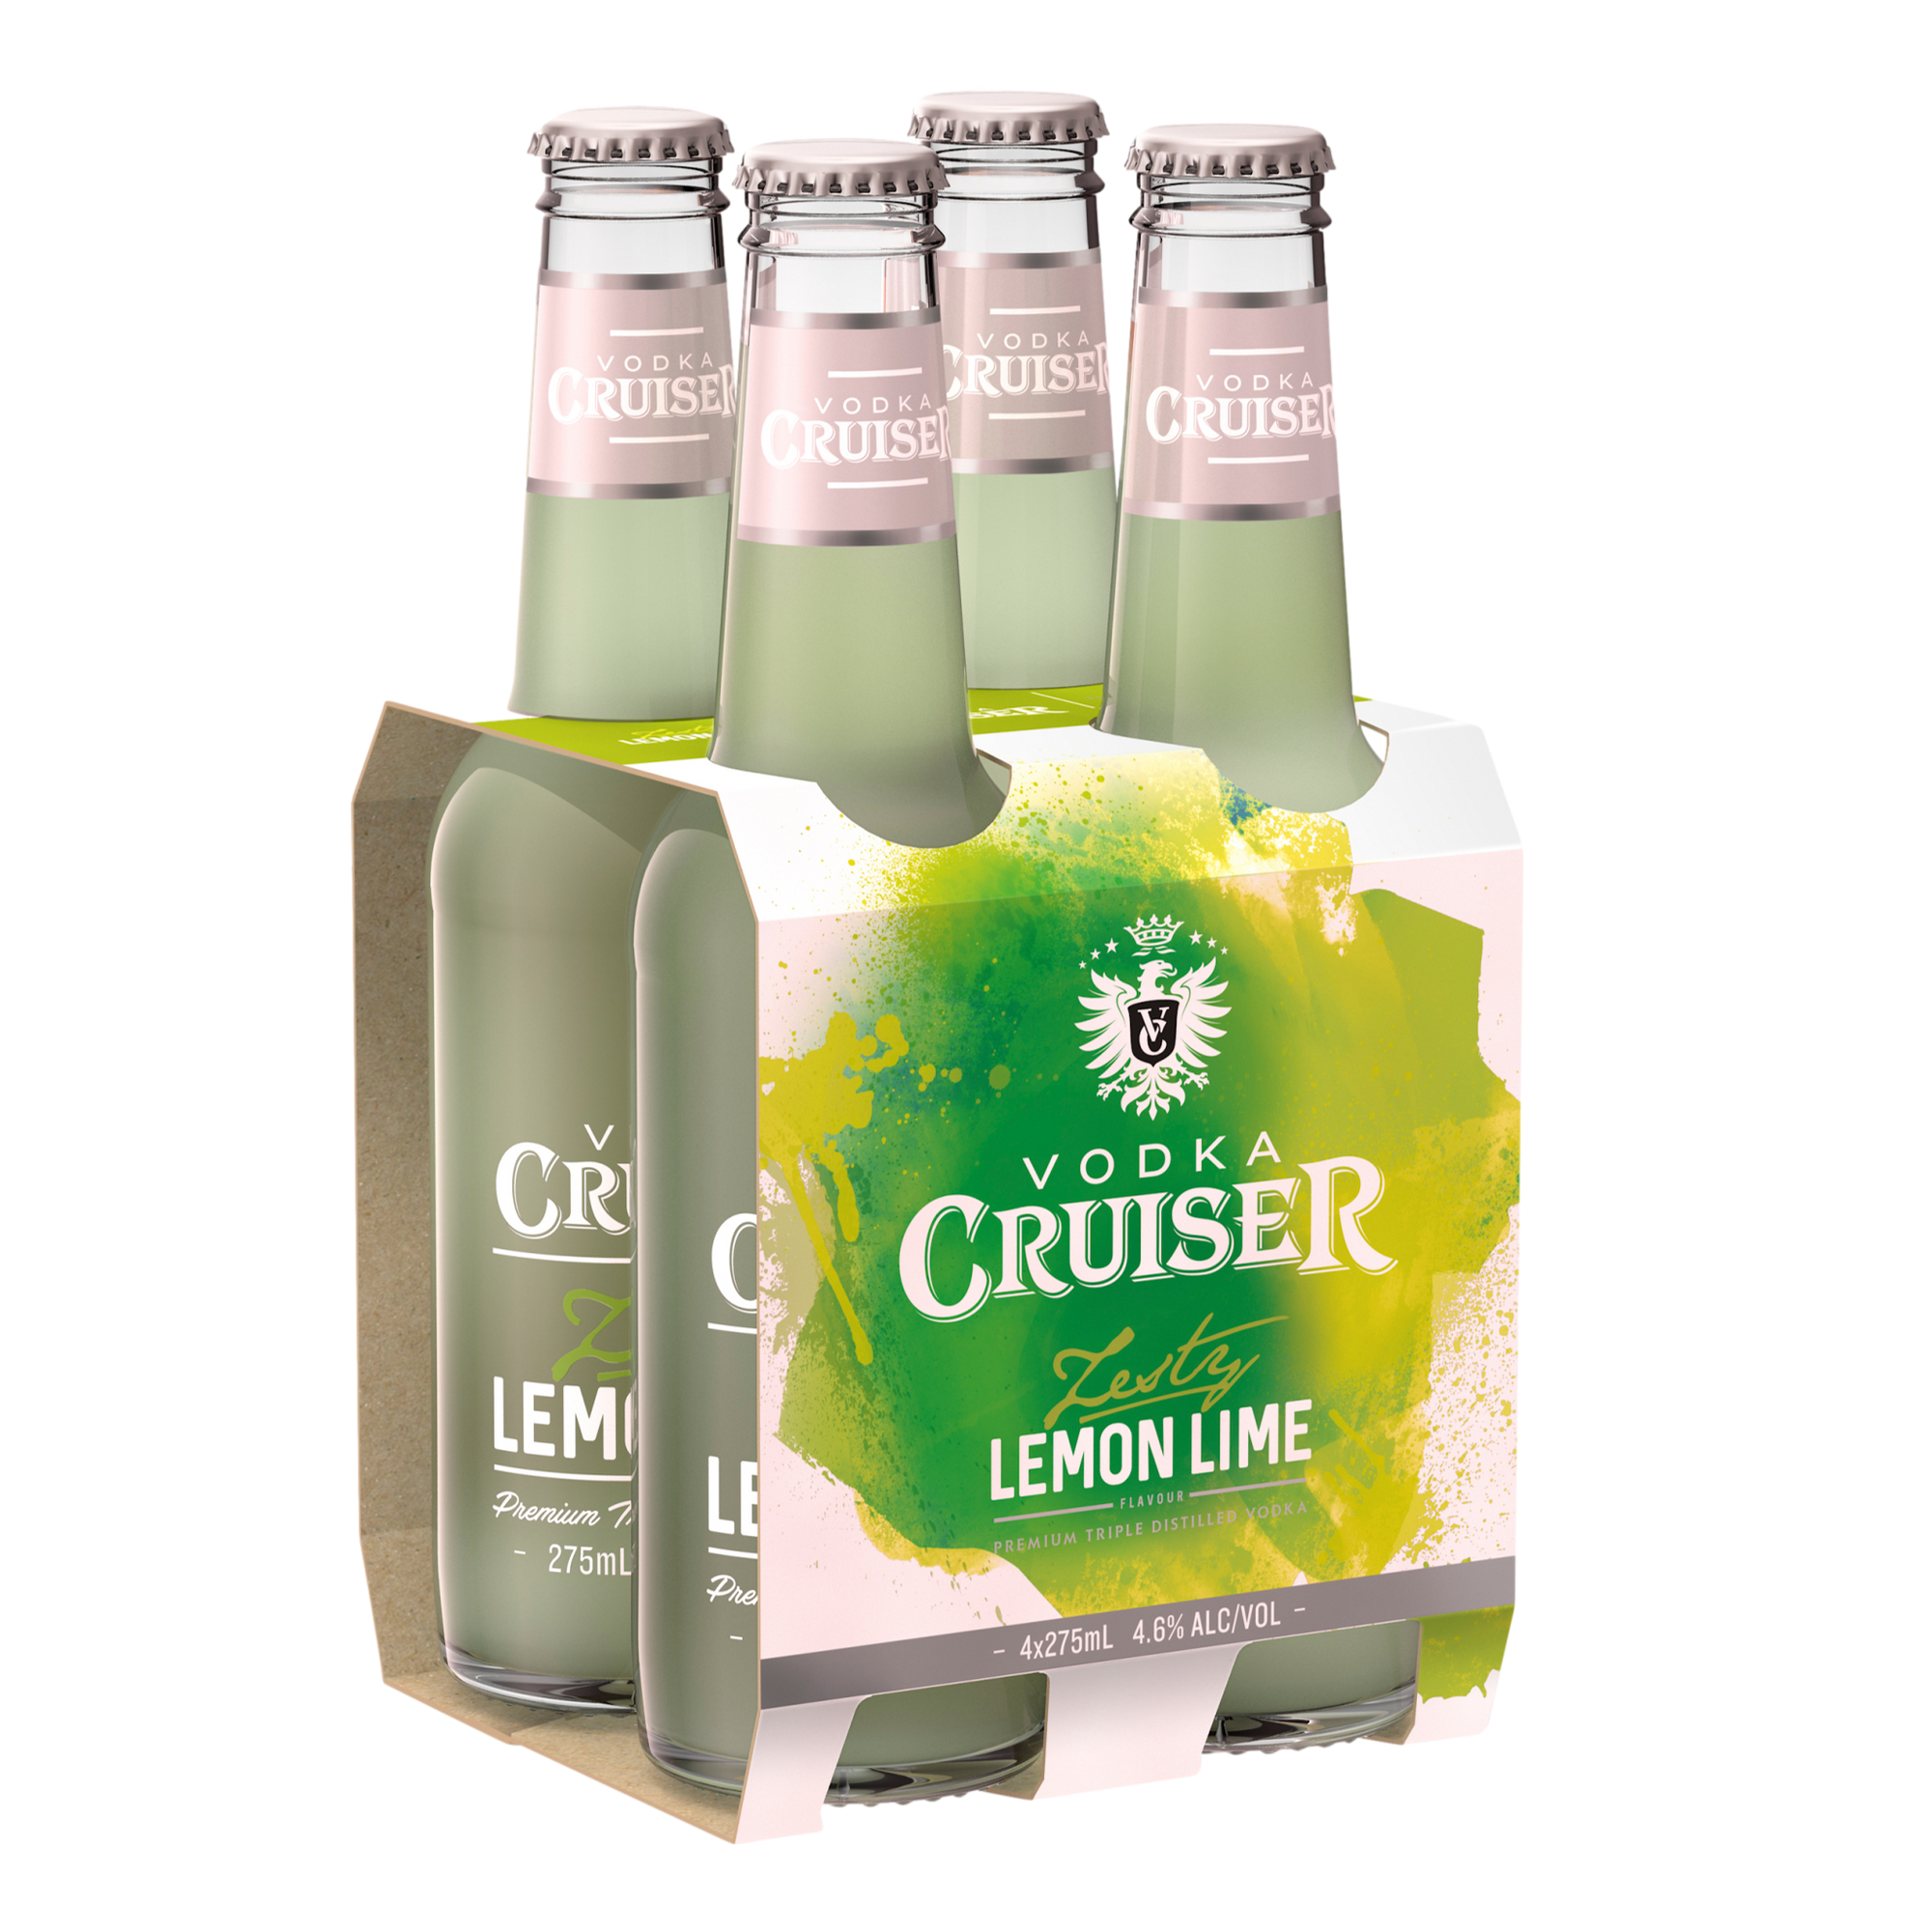 Vodka Cruiser Zesty Lemon Lime 275ml Bottle 4 Pack